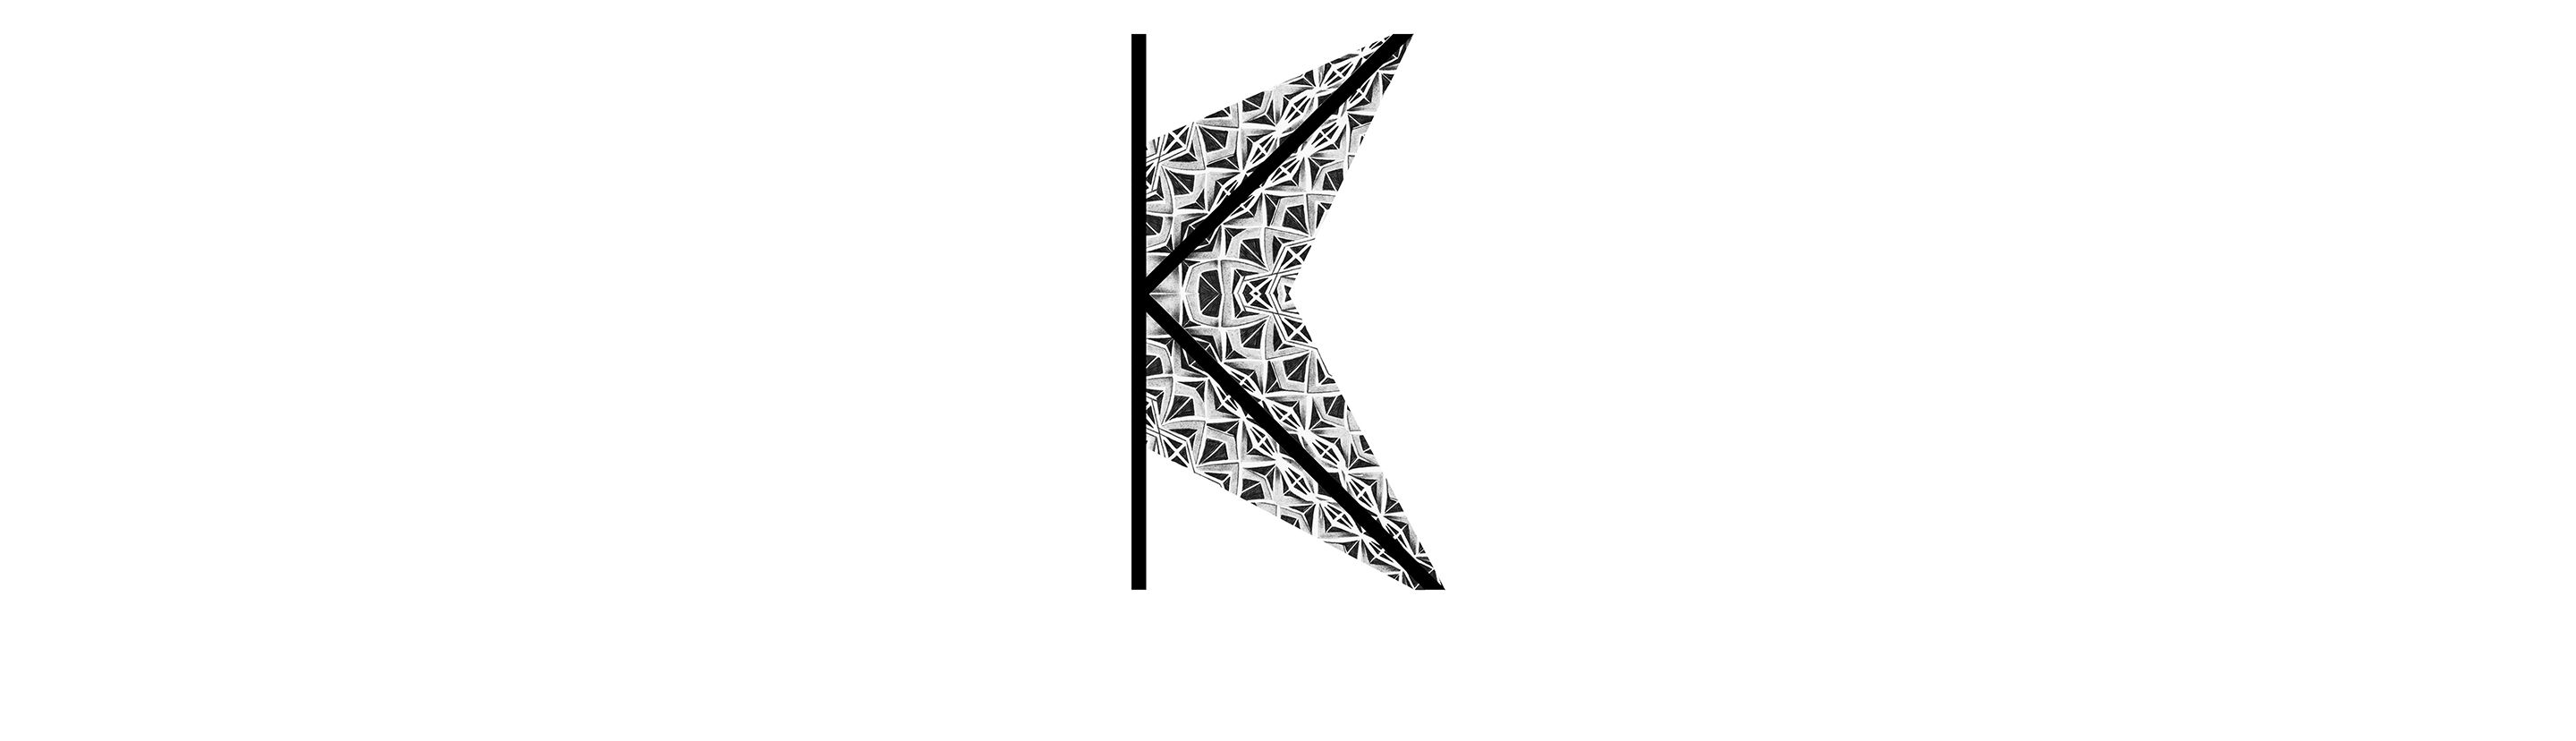 K IS FOR KALEIDOSCOPIC